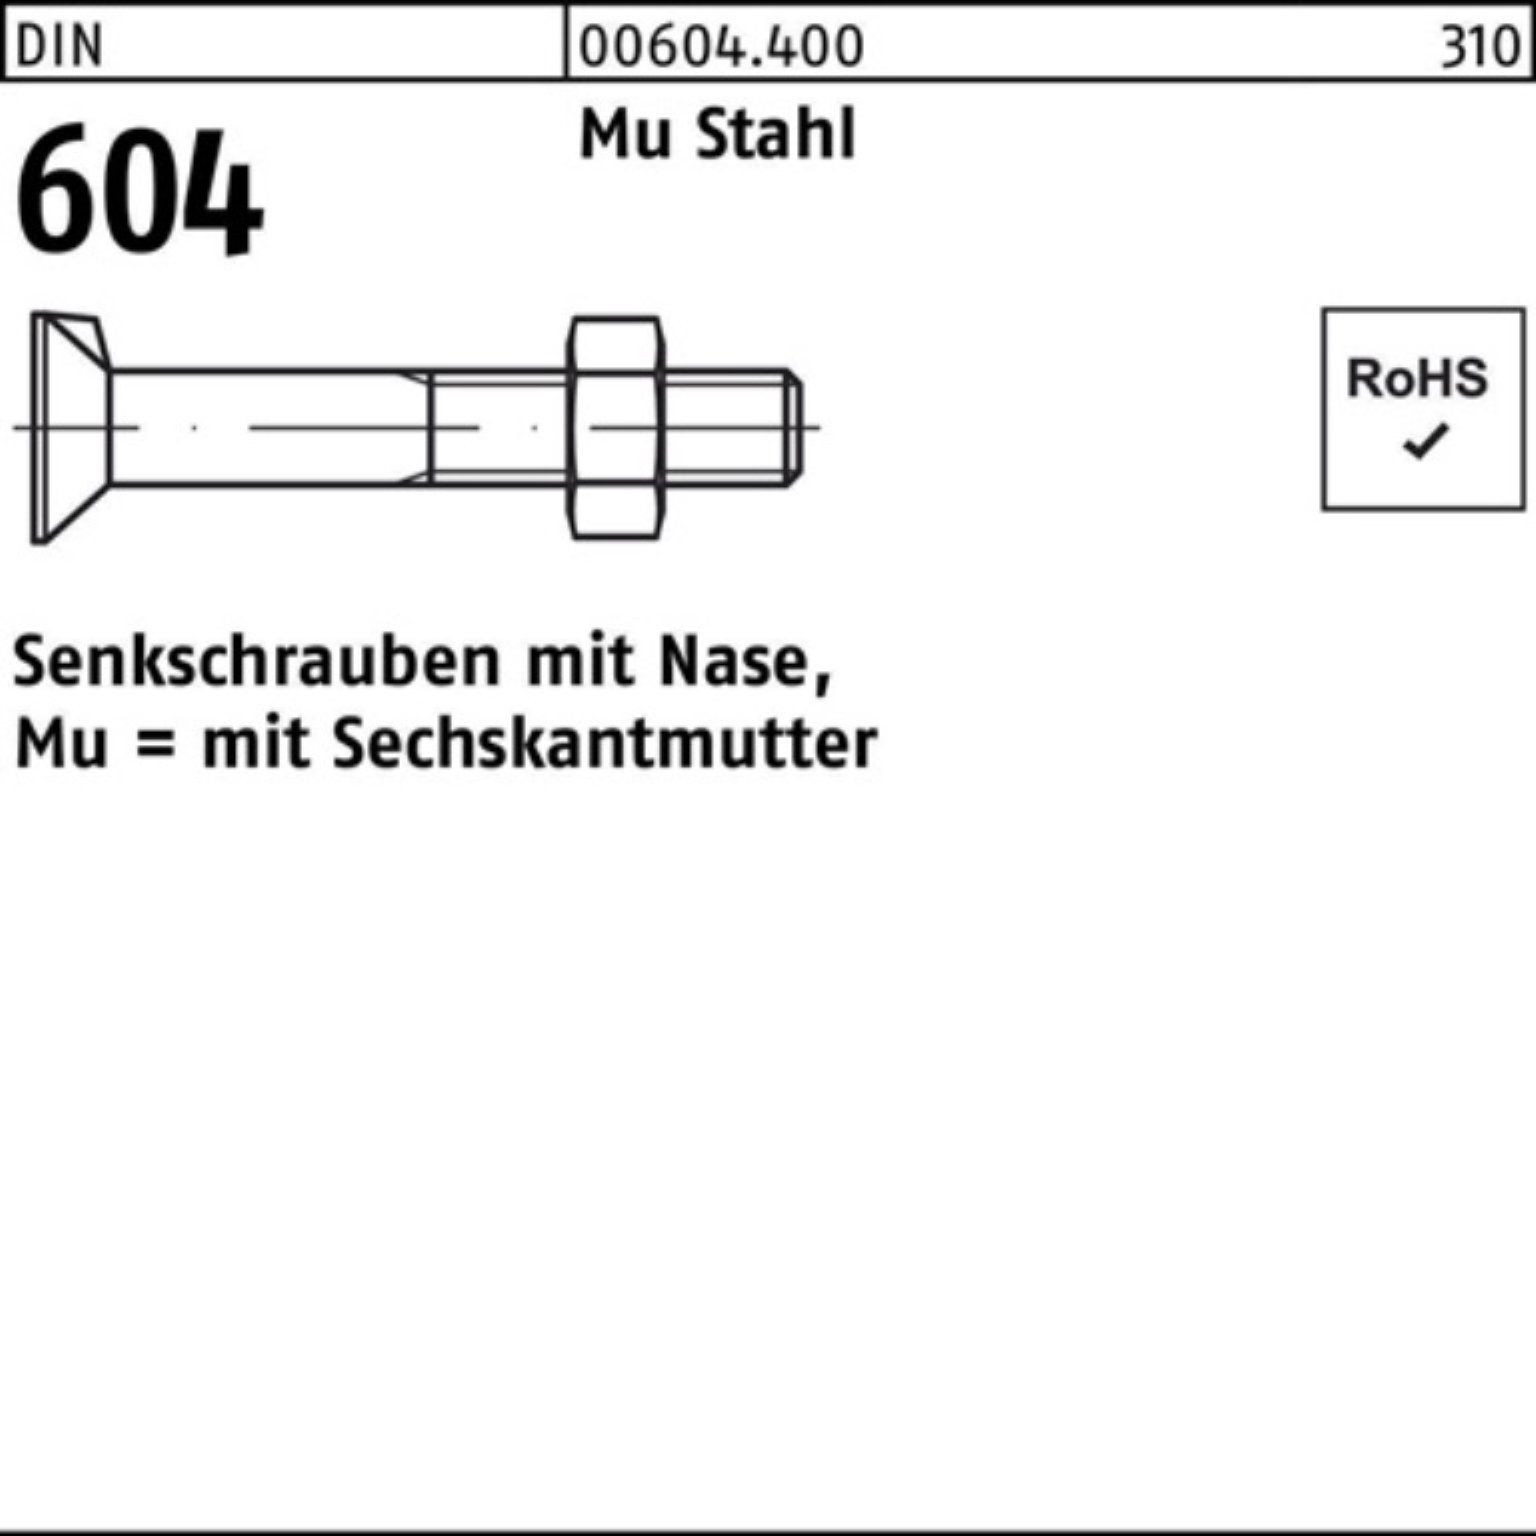 Reyher Senkschraube 100er Pack Senkschraube DIN 604 Nase/6-ktmutter M12x 80 Mu Stahl 4.6 5